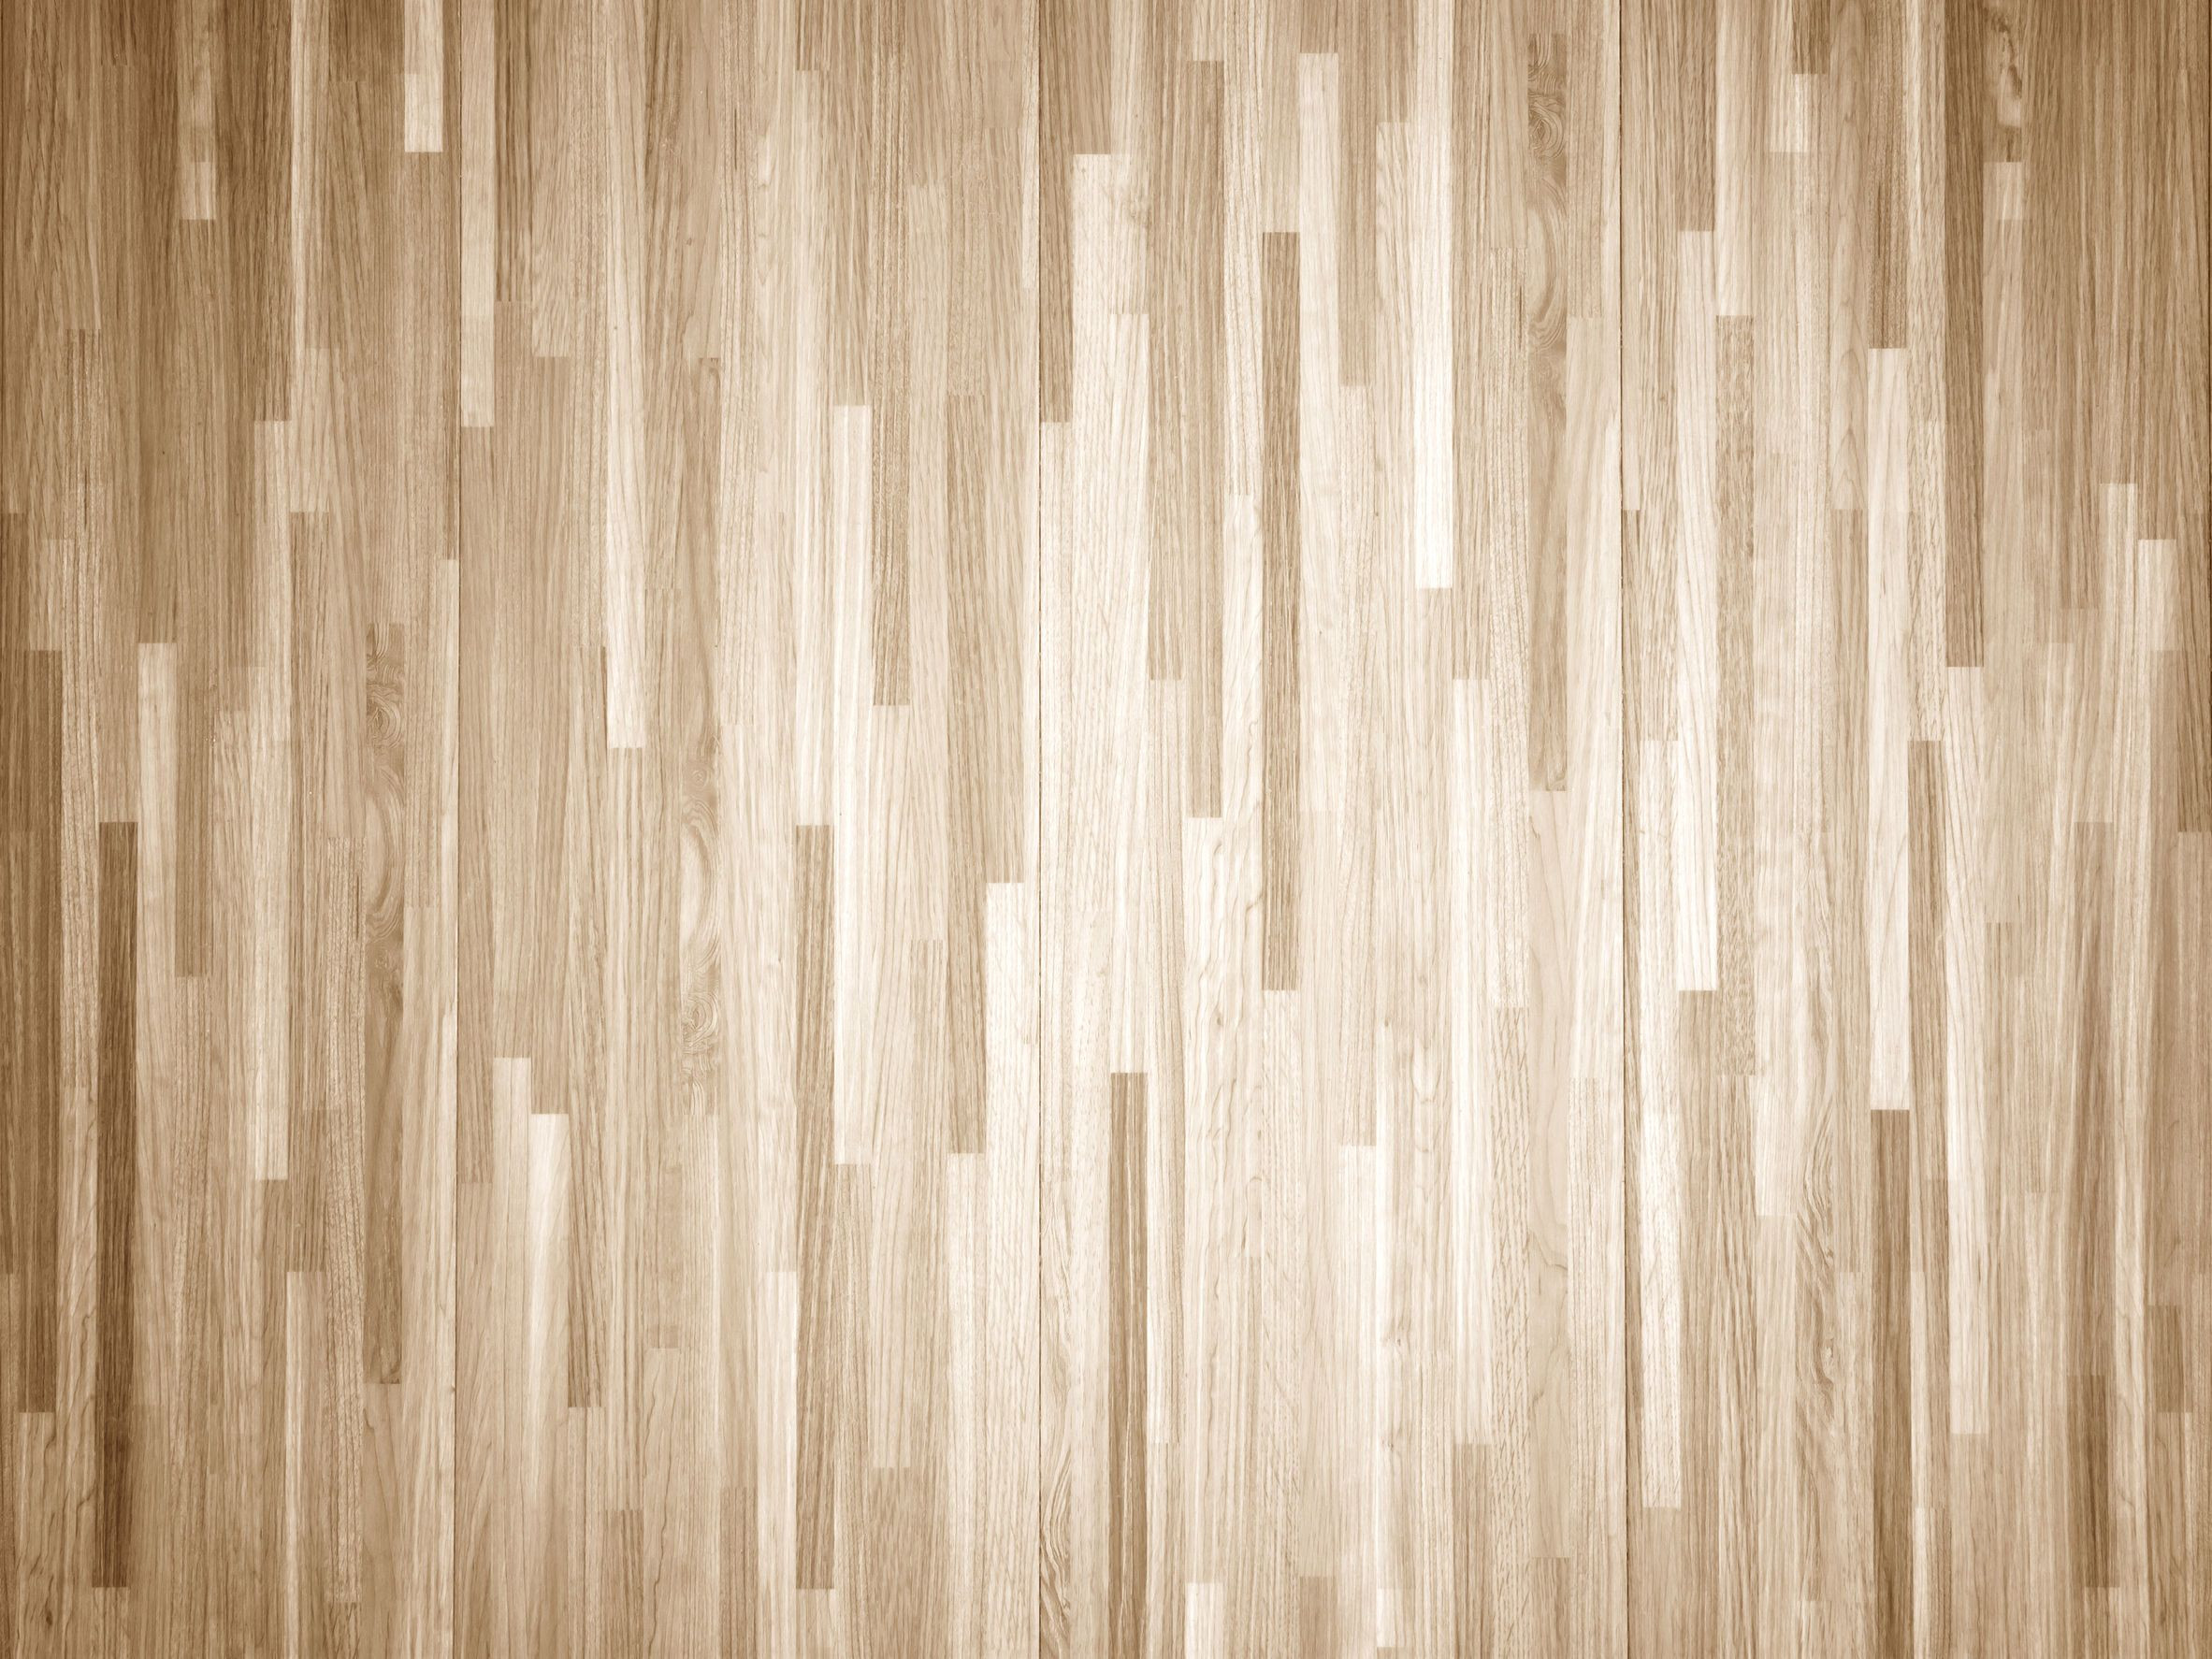 28 Wonderful Hardwood Floor Stains 2017 2024 free download hardwood floor stains 2017 of how to chemically strip wood floors woodfloordoctor com throughout you